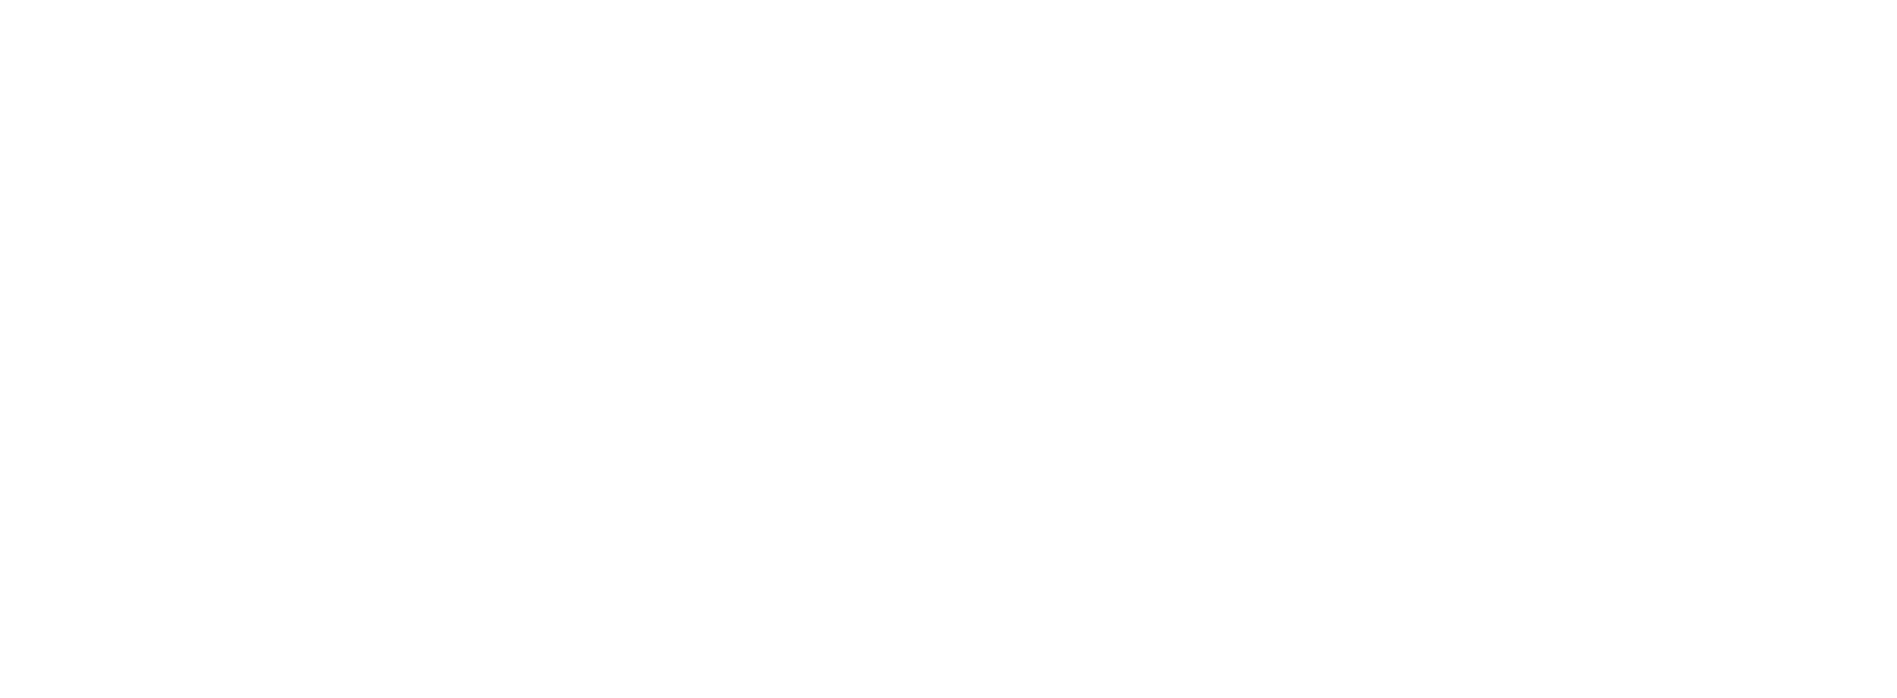 Dröse & Norberg